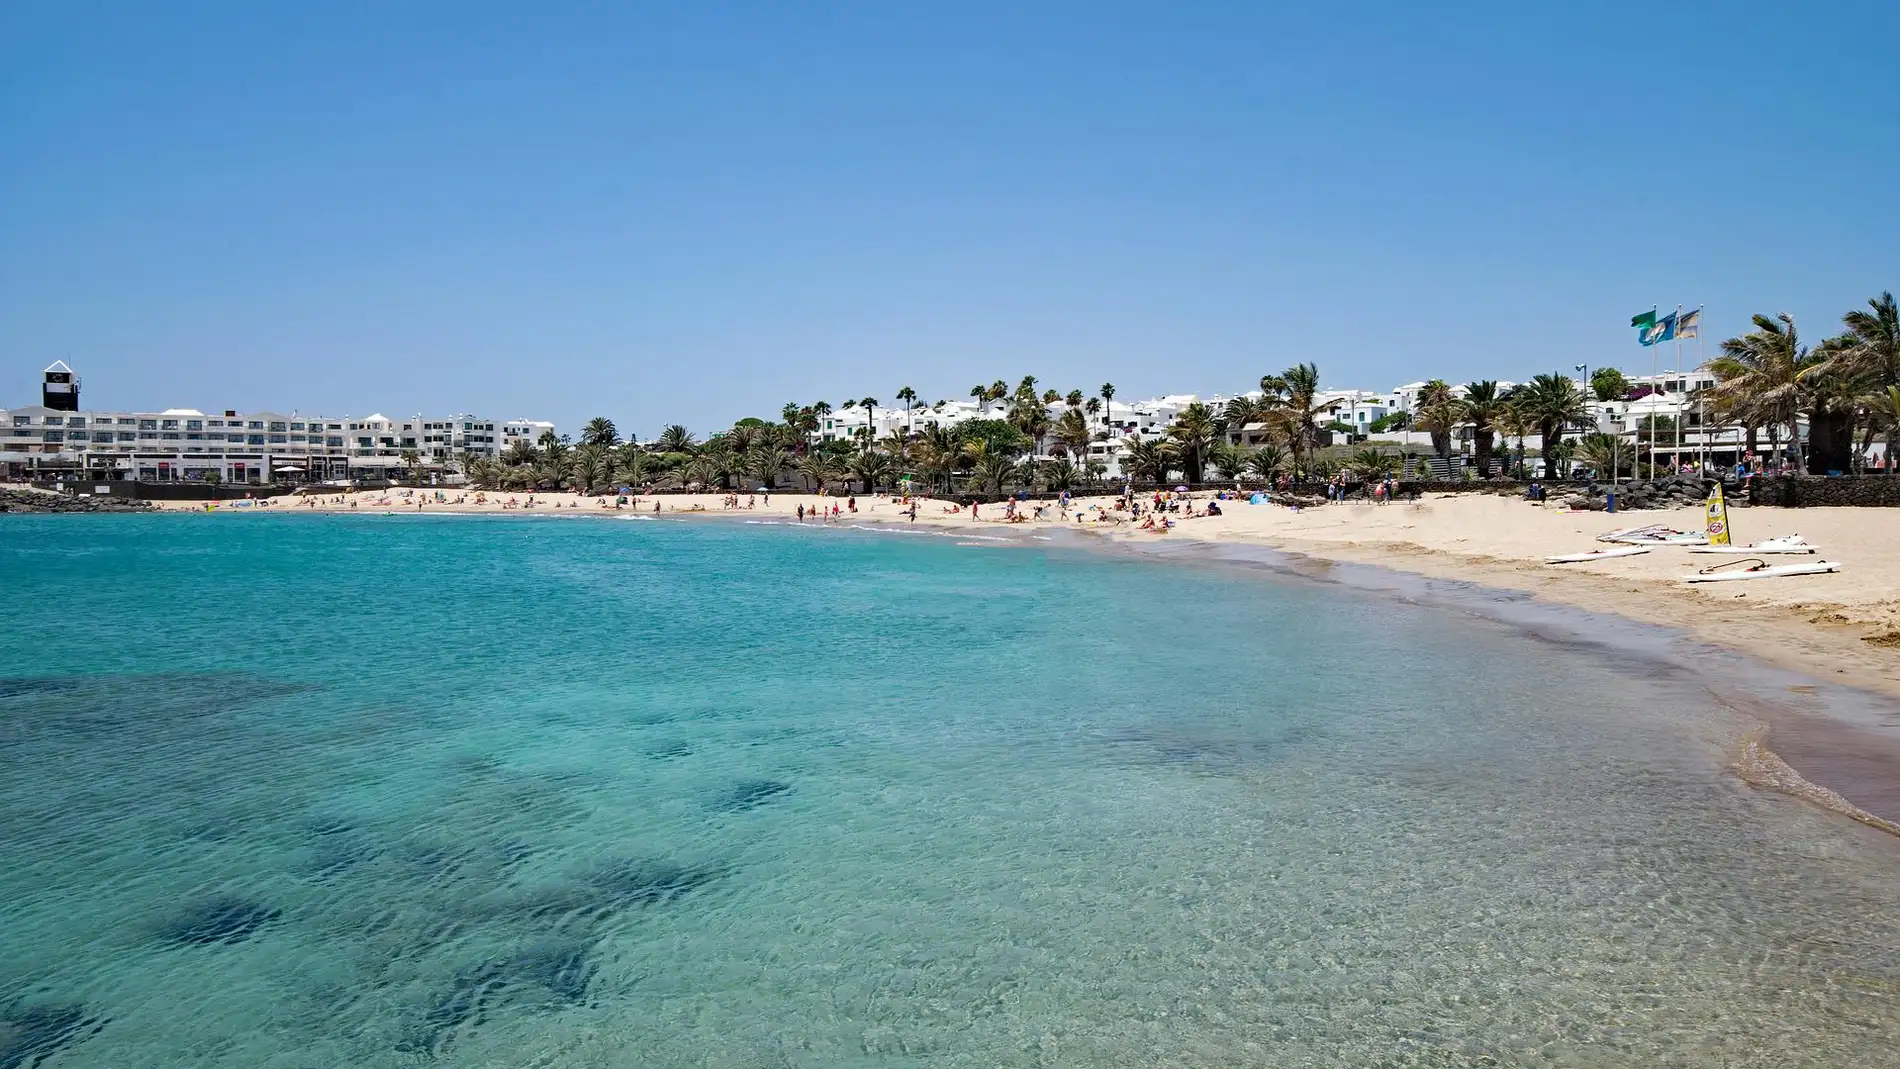 Descubre Teguise, uno de los municipios más bonitos de Lanzarote